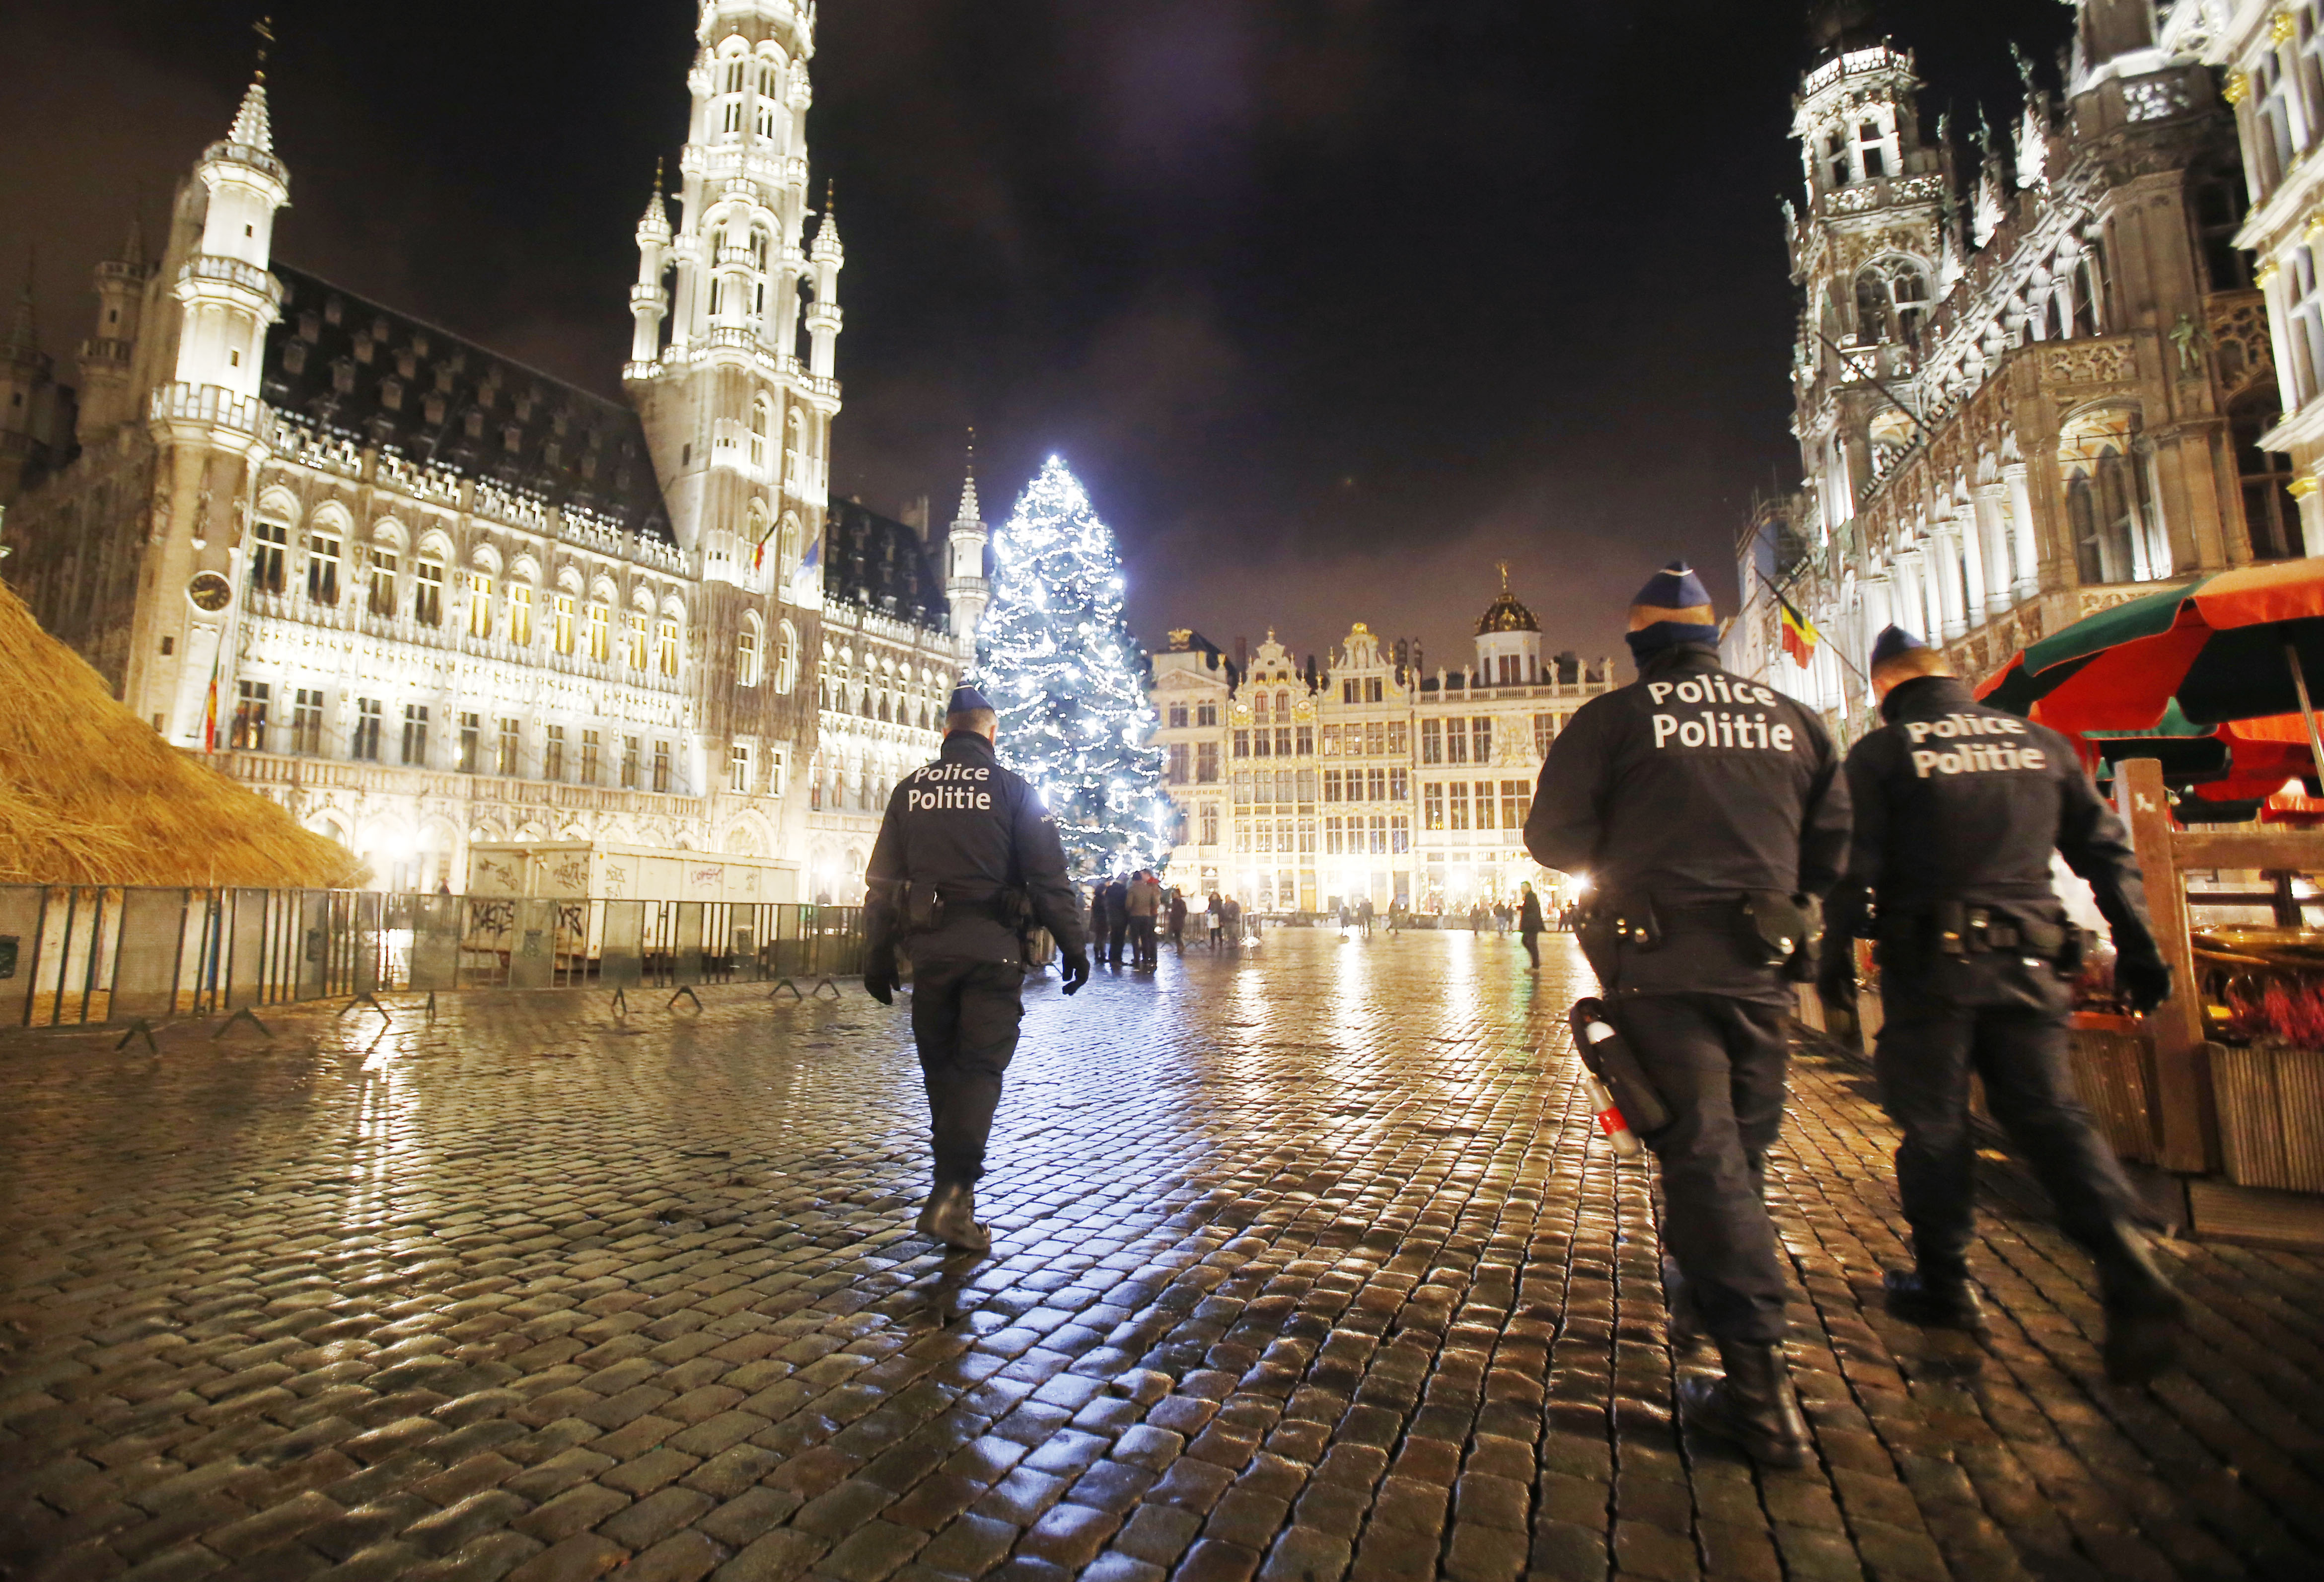  Europa se alista para nuevas amenazas tras fin cercano de yihadistas